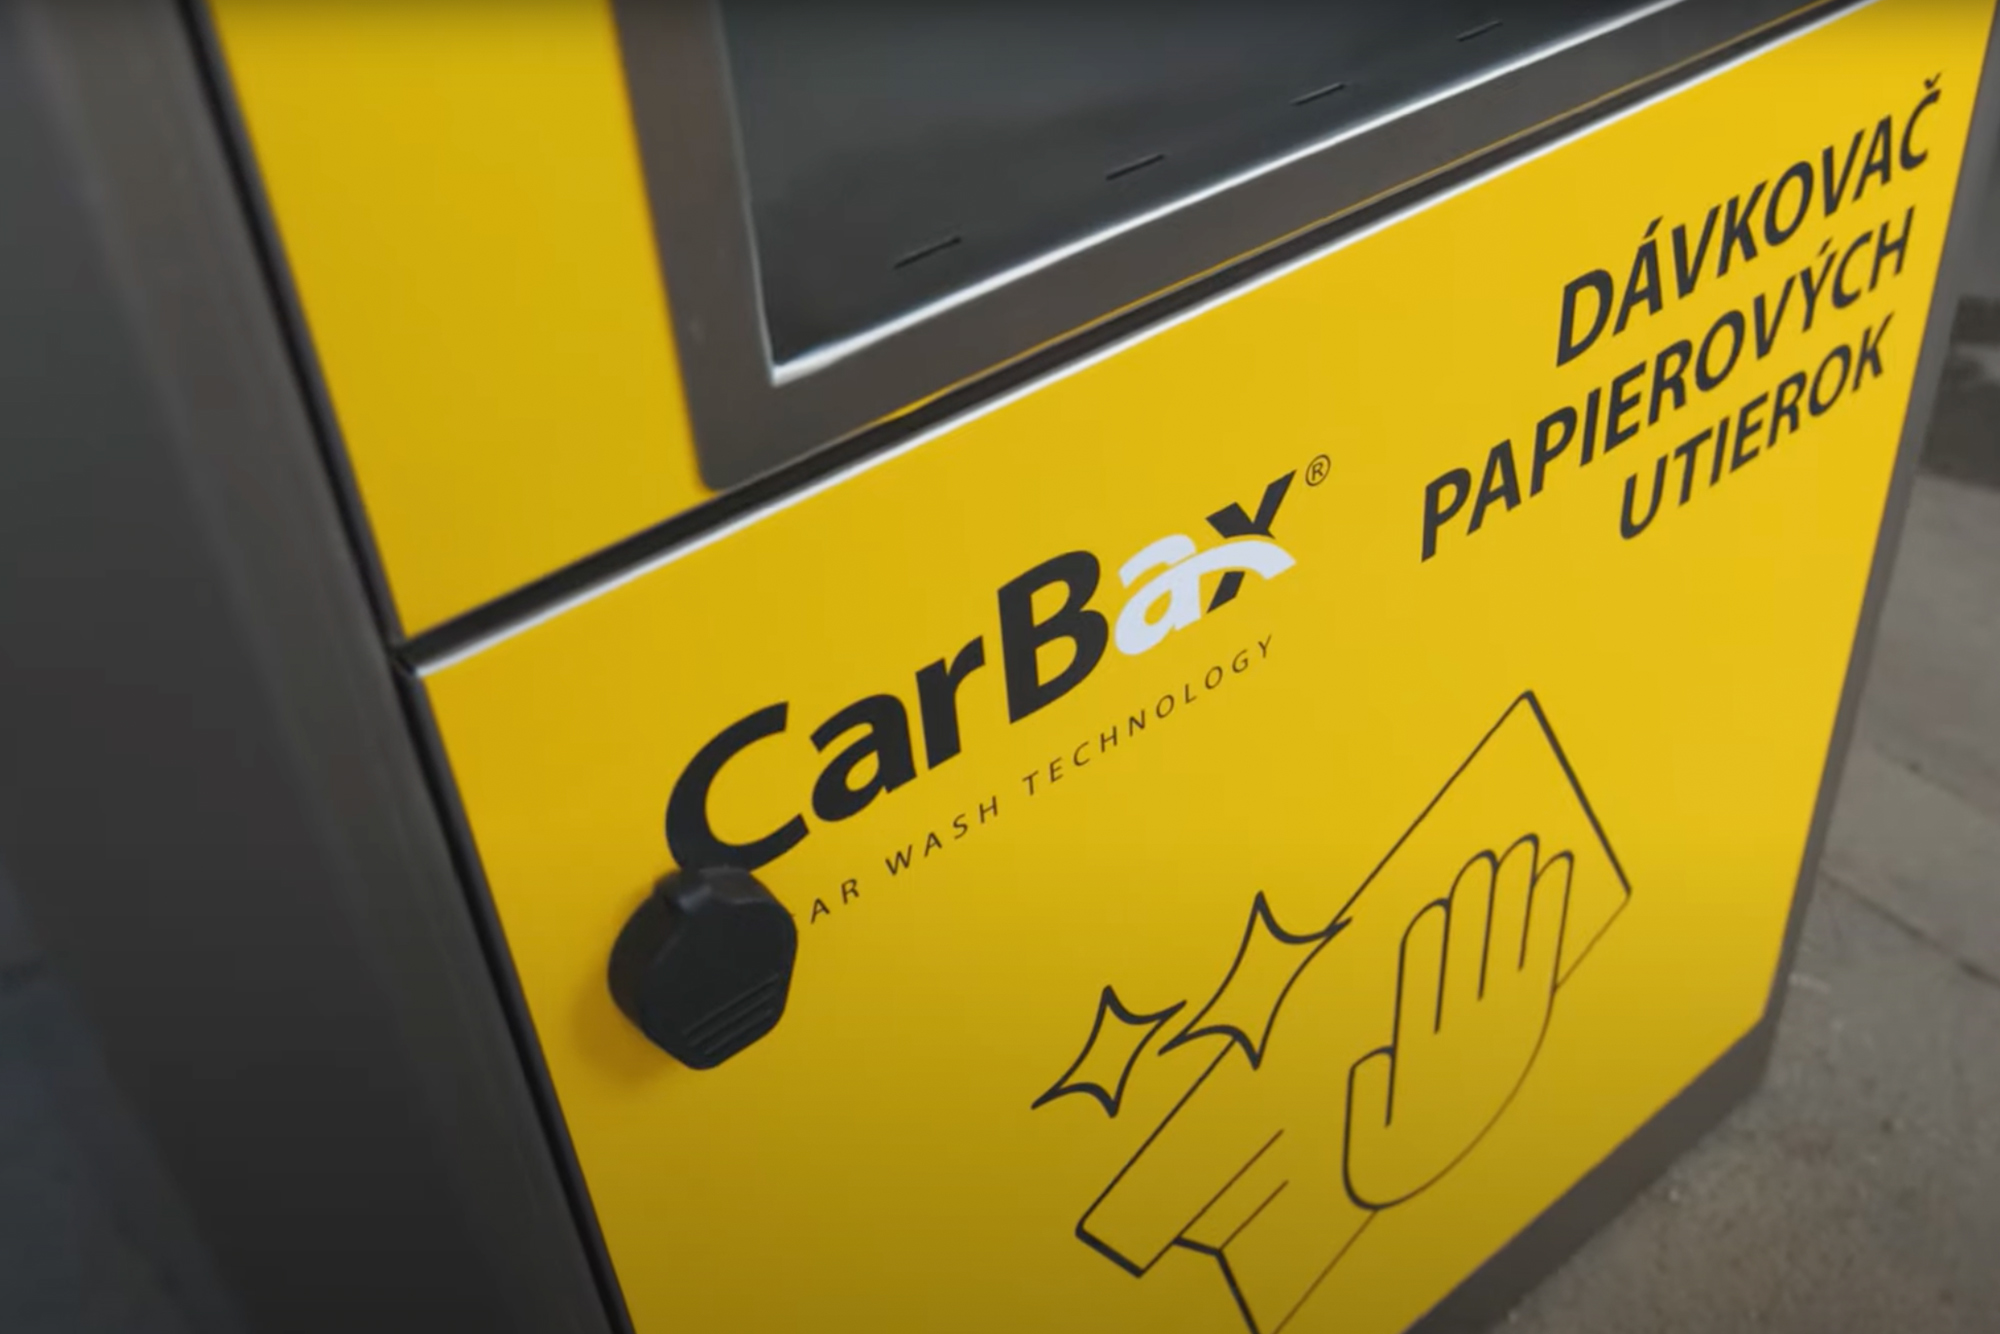 CarBax Towel Dispenser